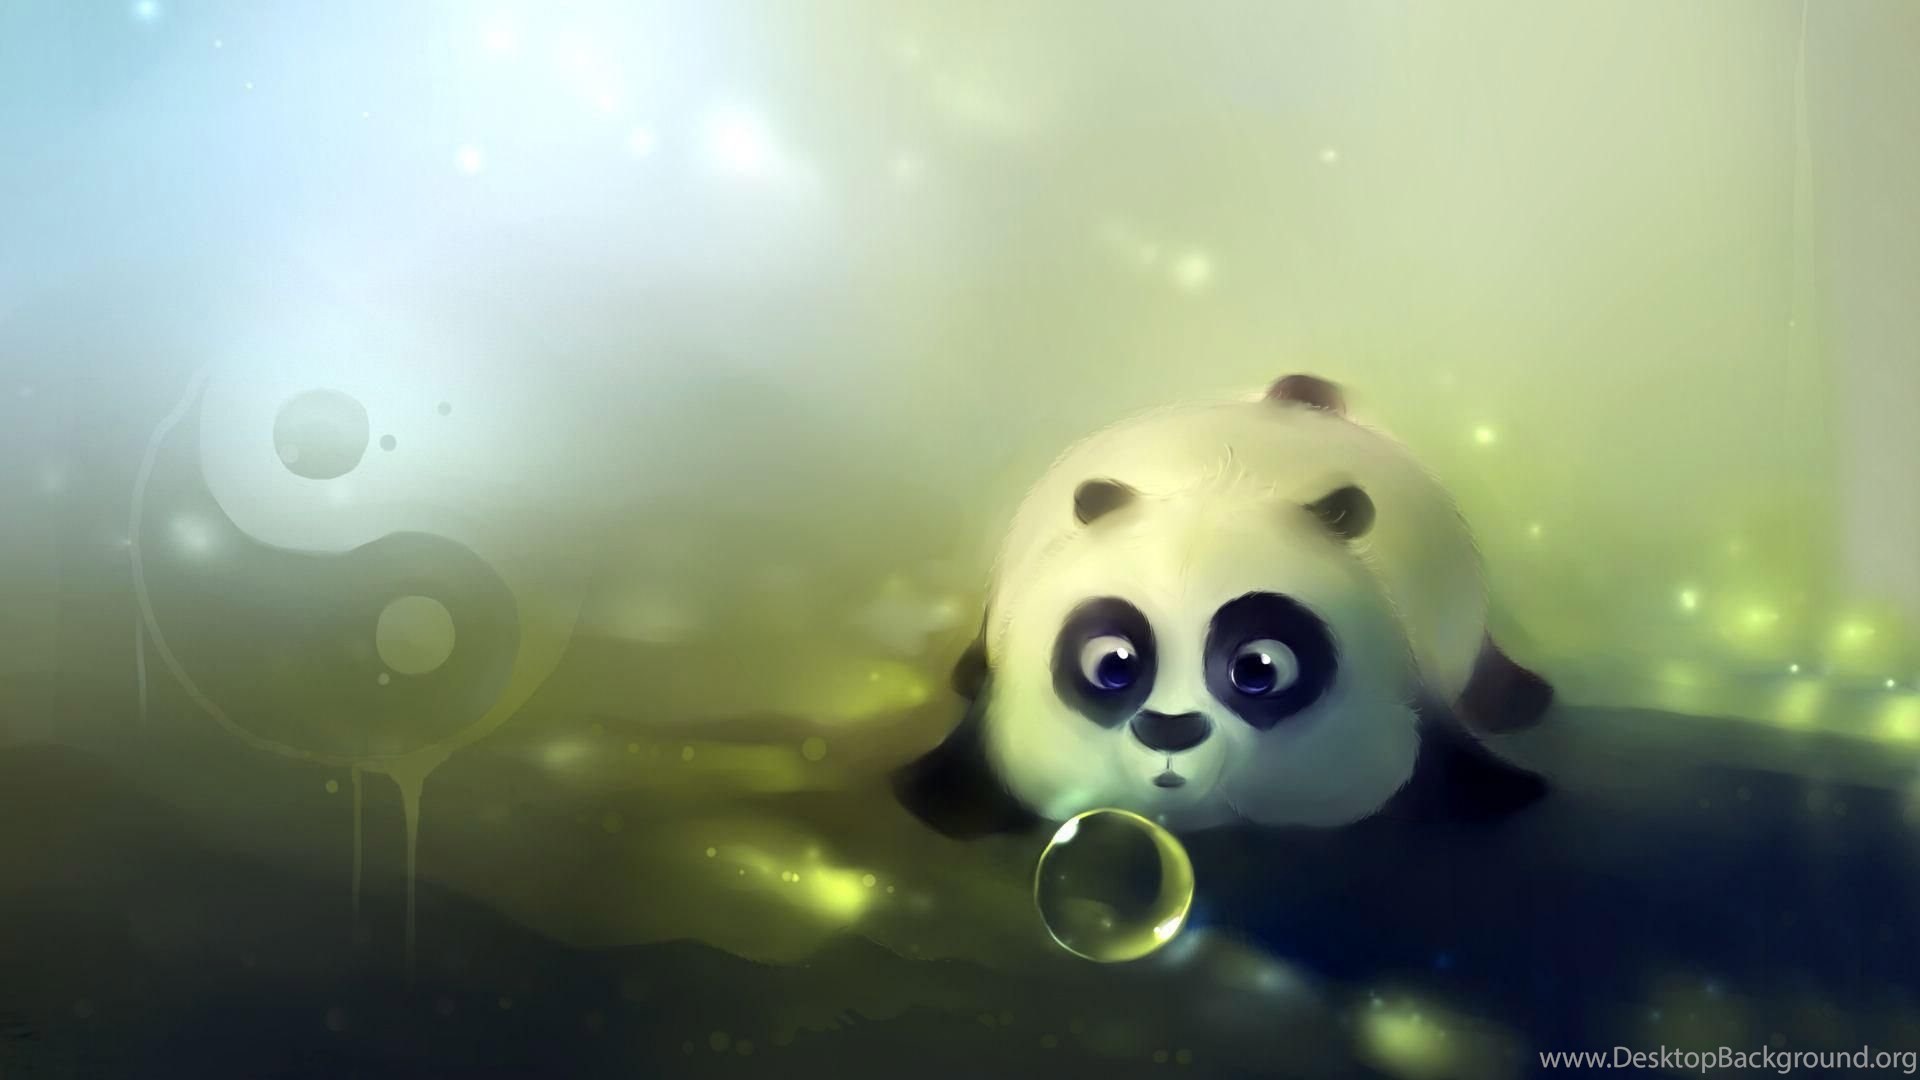 Free Download Cute Baby Panda Wallpaper Hd Desktop 1920x1080Panda